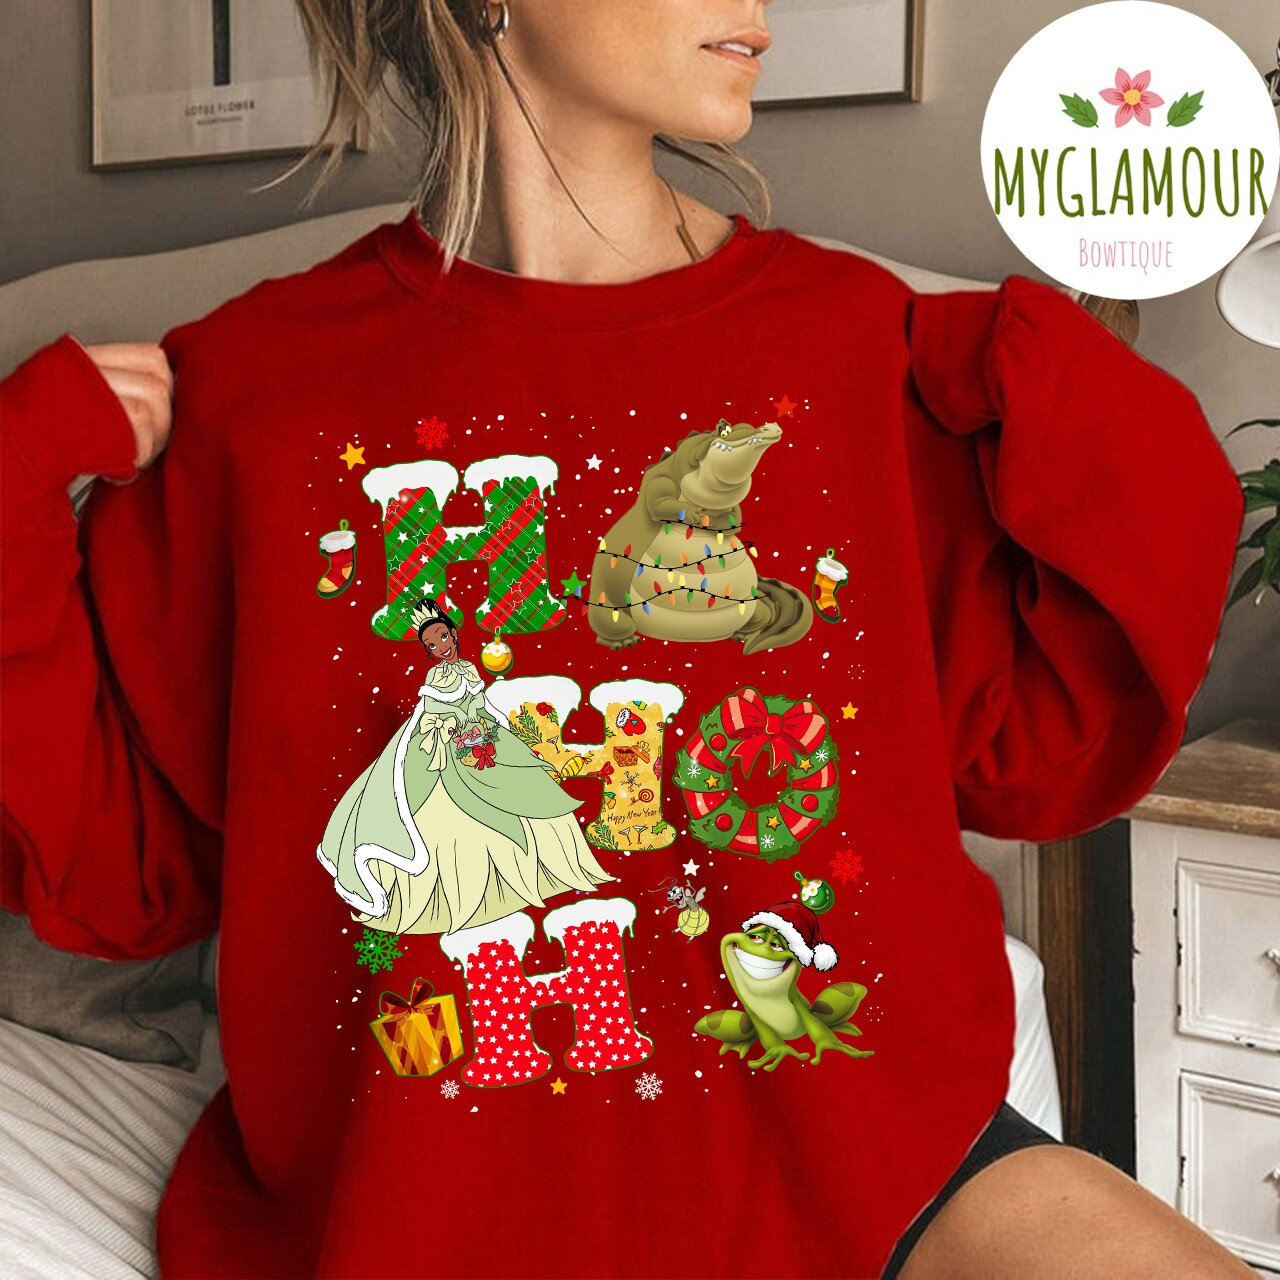 Discover Disney The Princess and the Frog Christmas Vintage Sweatshirt, Princess Tiana Christmas Sweatshirt